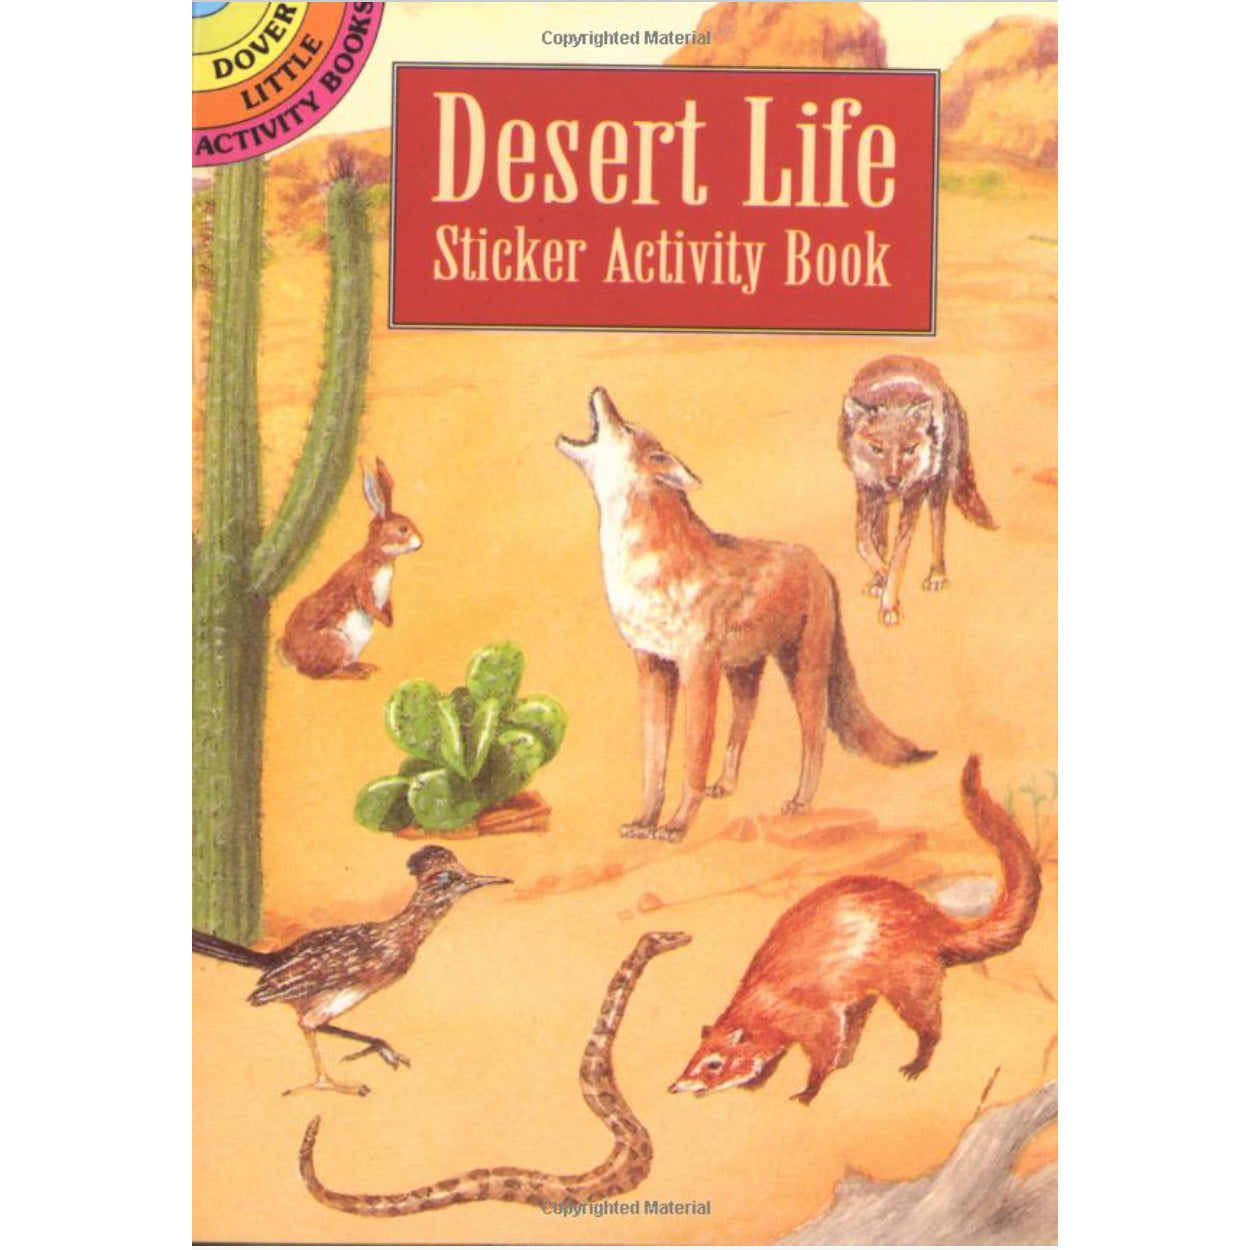 desert life sticker activity book